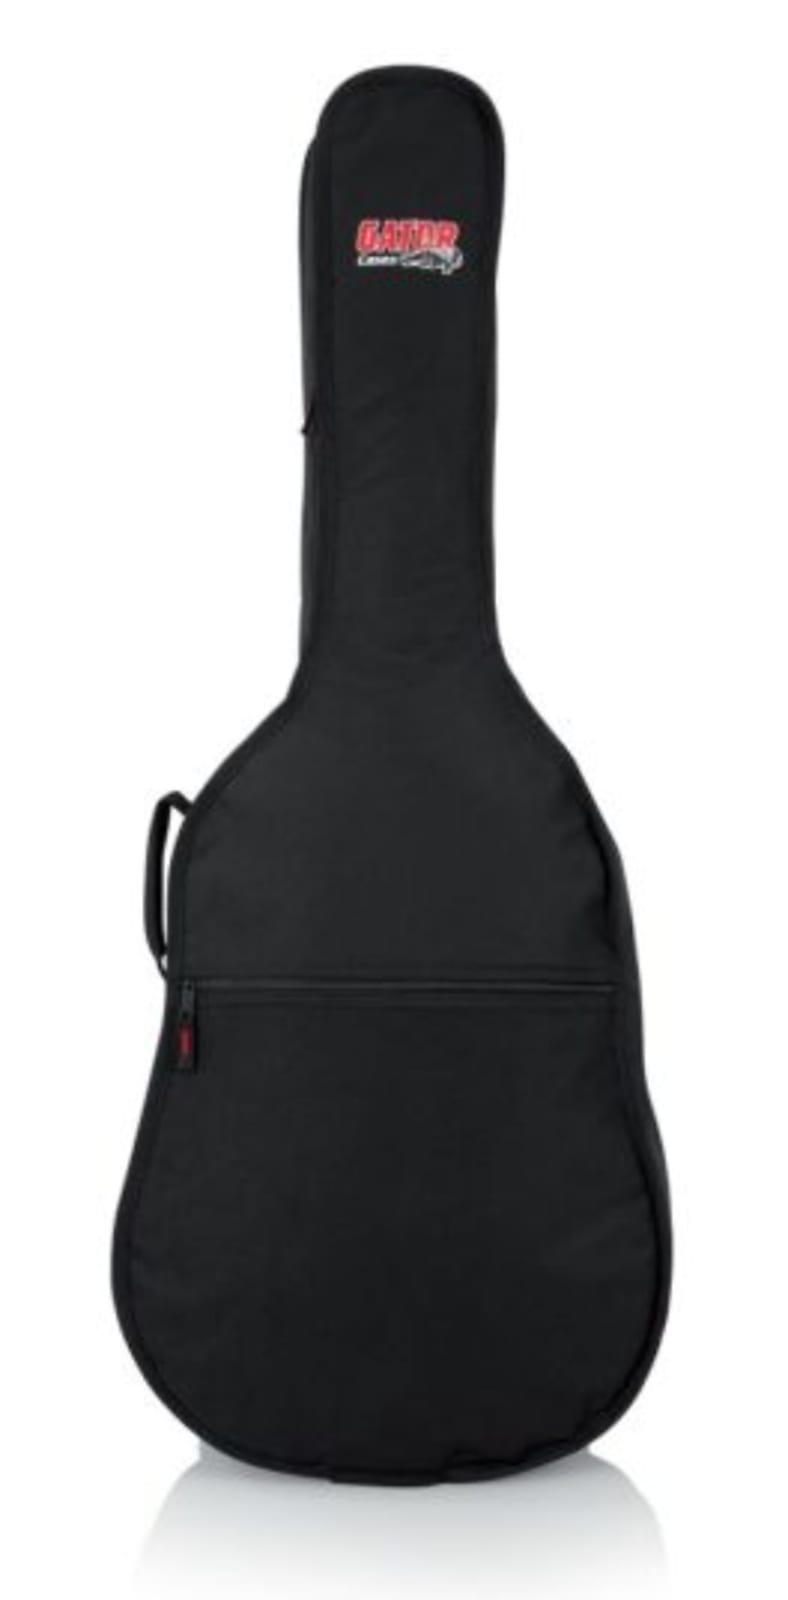 Gator GBE Mini Acoustic Guitar Gig Bag